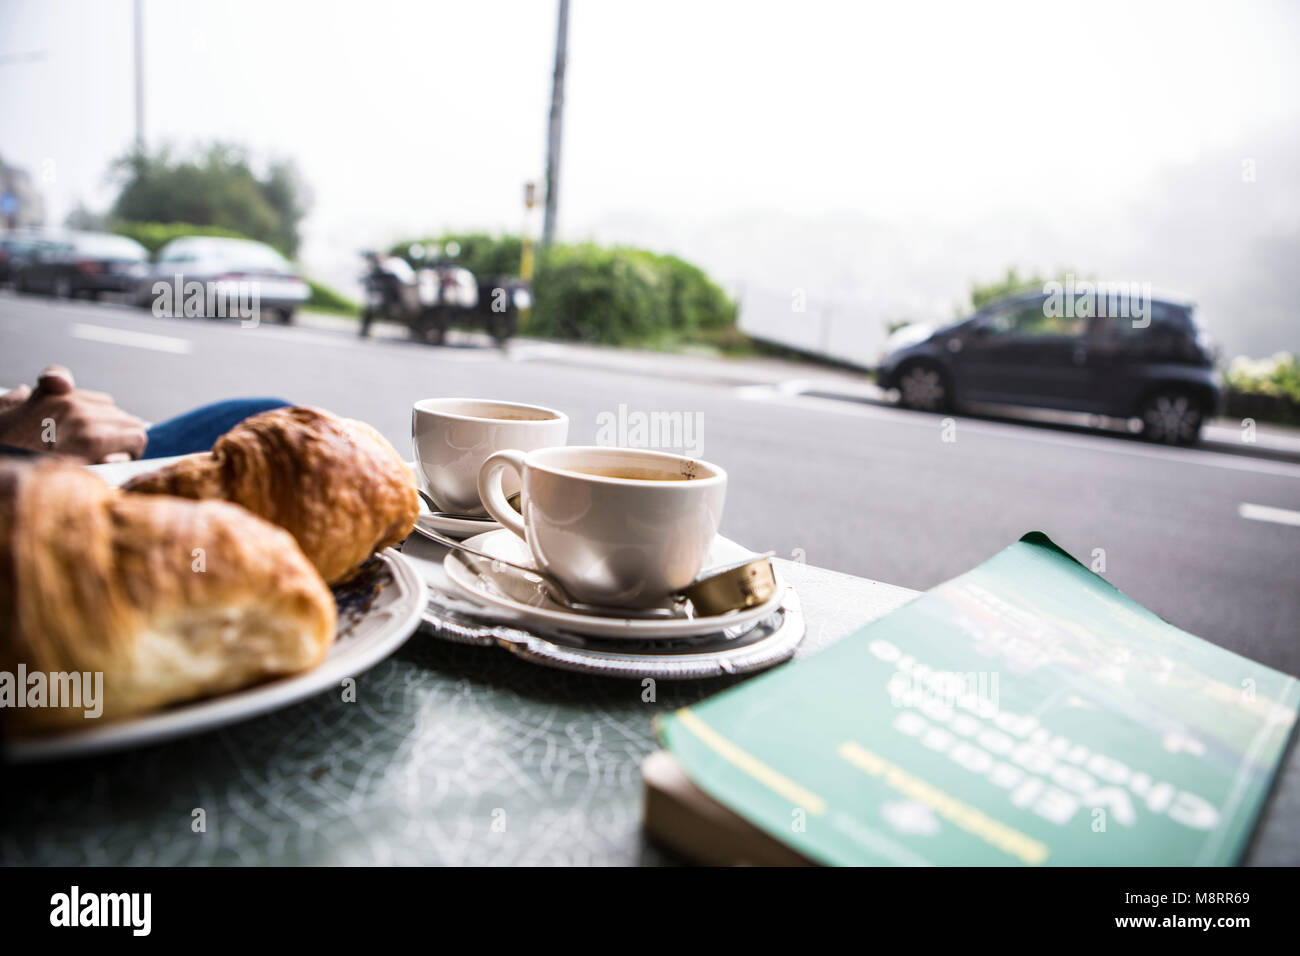 Ein französisches Frühstück auf einem Bistrotisch in der belgischen Kleinstadt Bouillon in Belgien: 2 Tasse Kaffee, ein Korb mit Croissants und ein gr Stock Photo